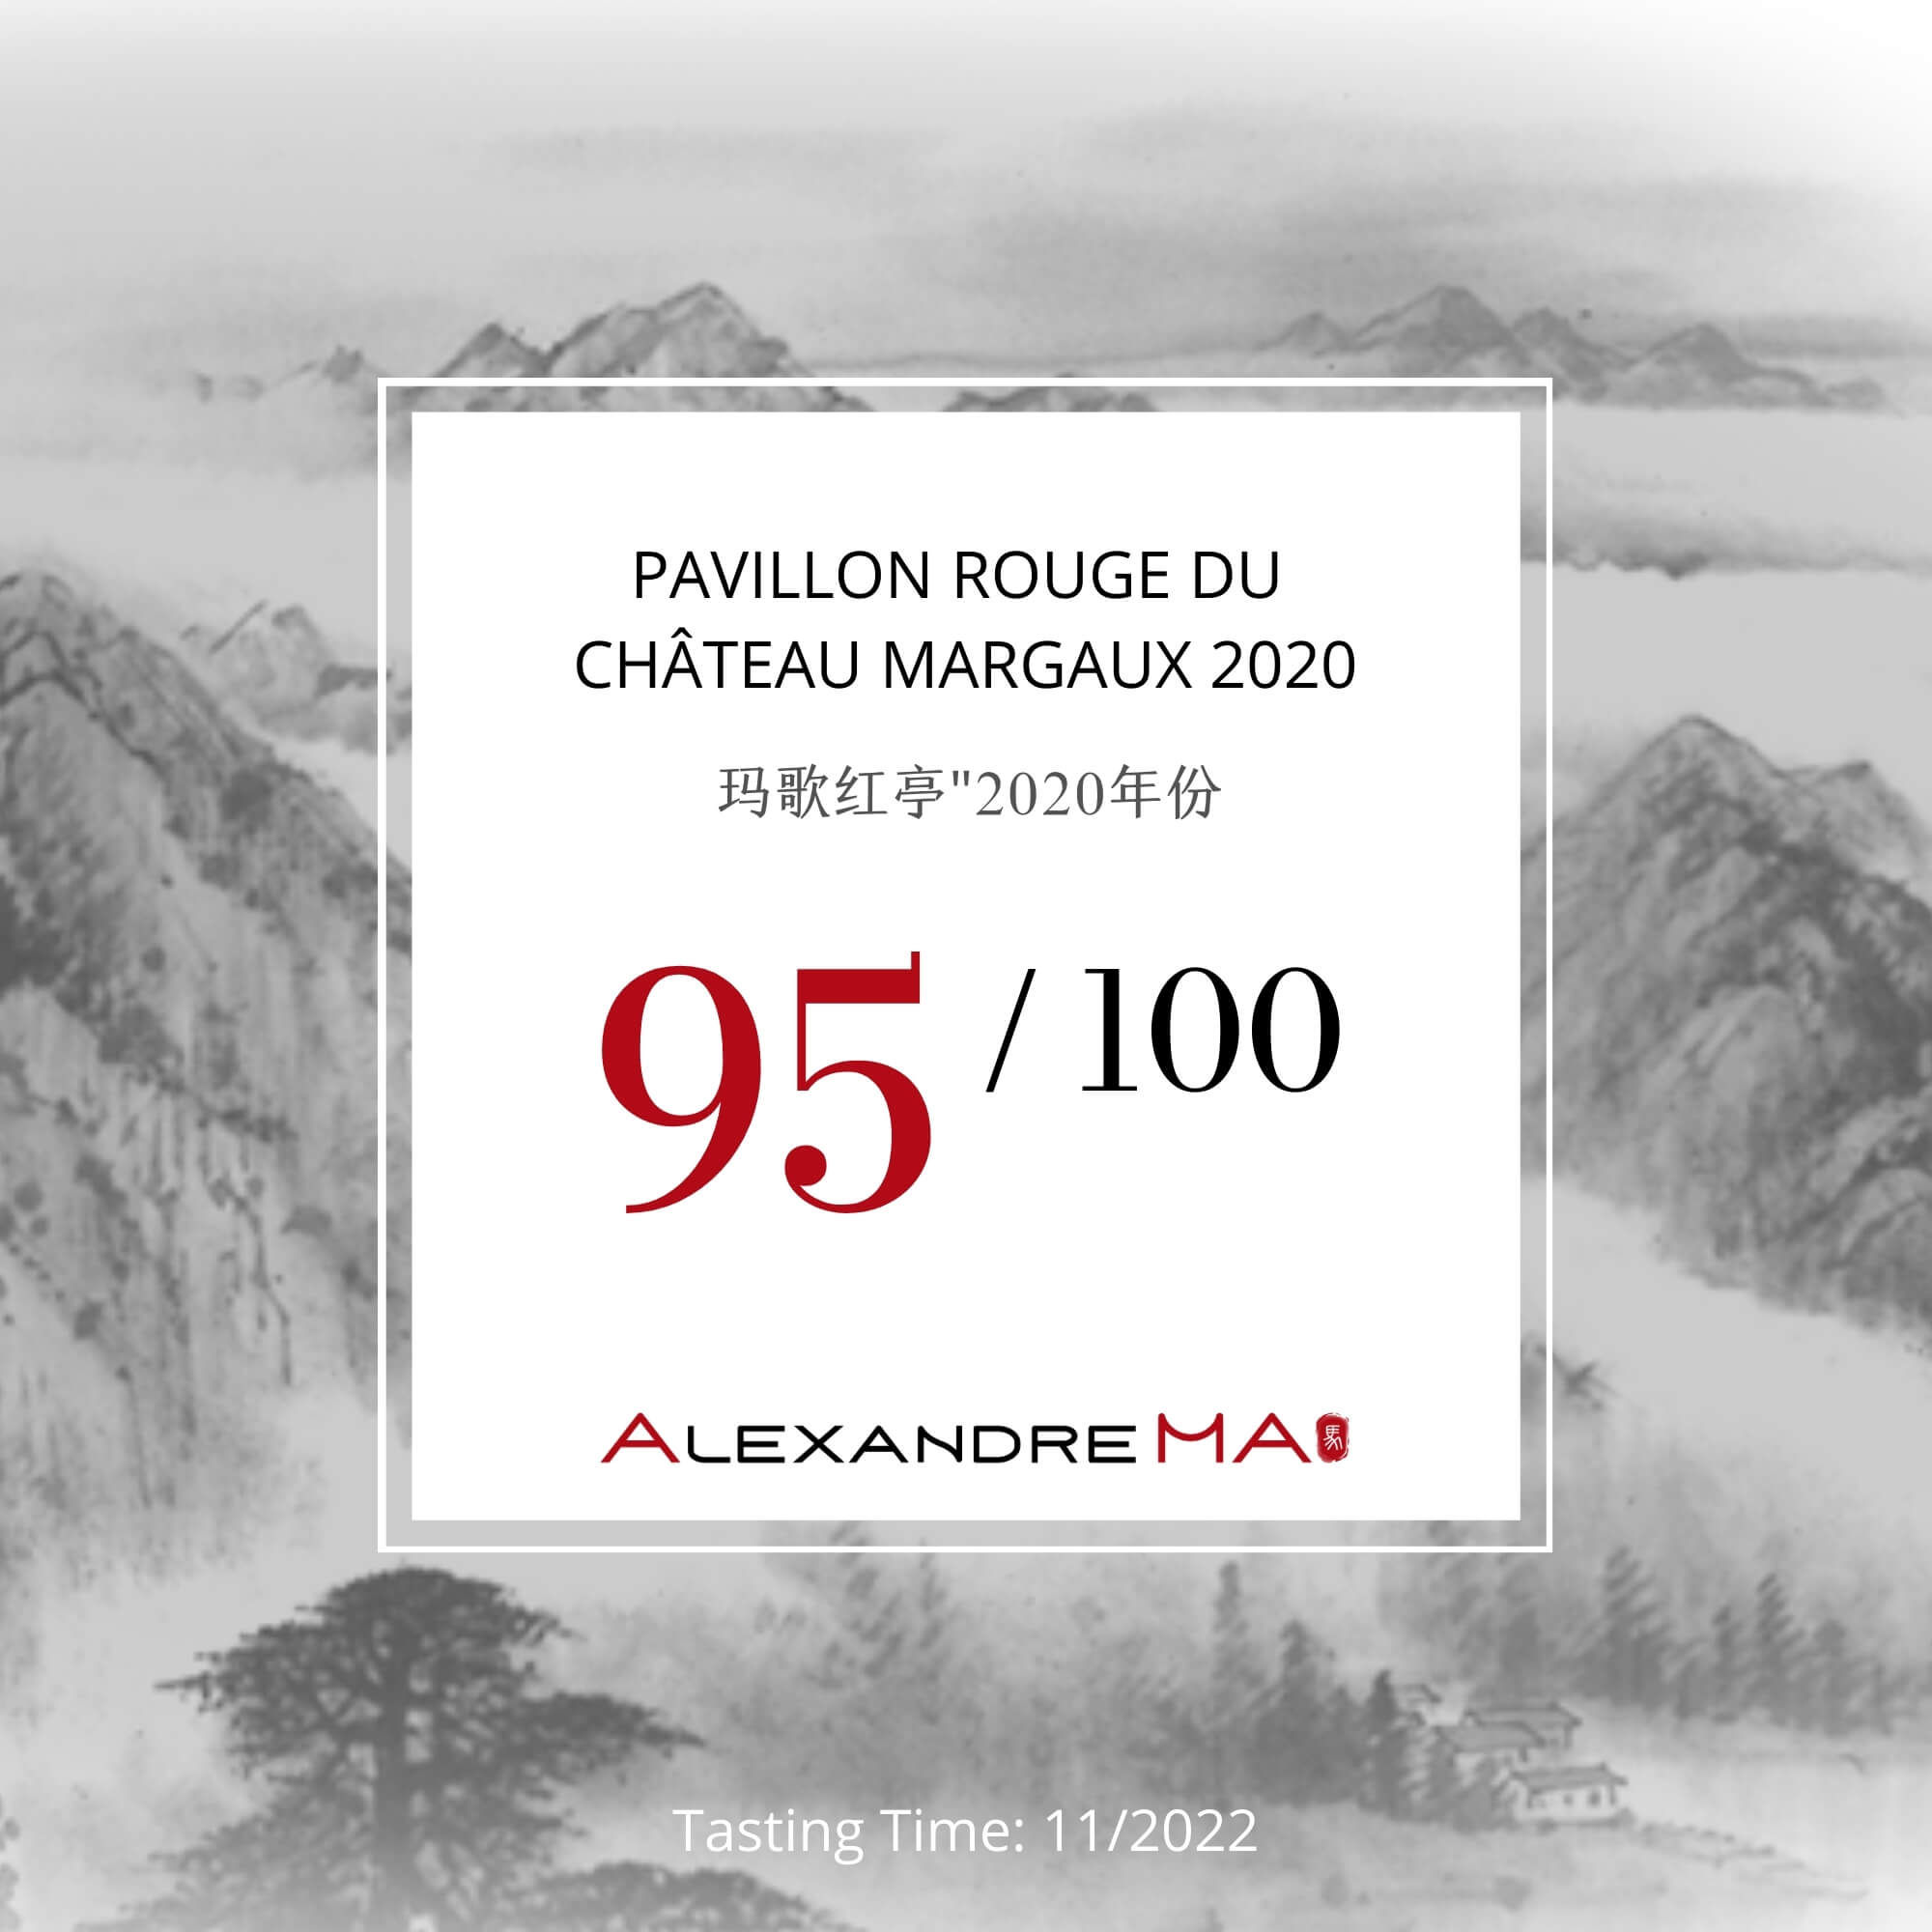 Pavillon Rouge du Château Margaux 2020 - Alexandre MA